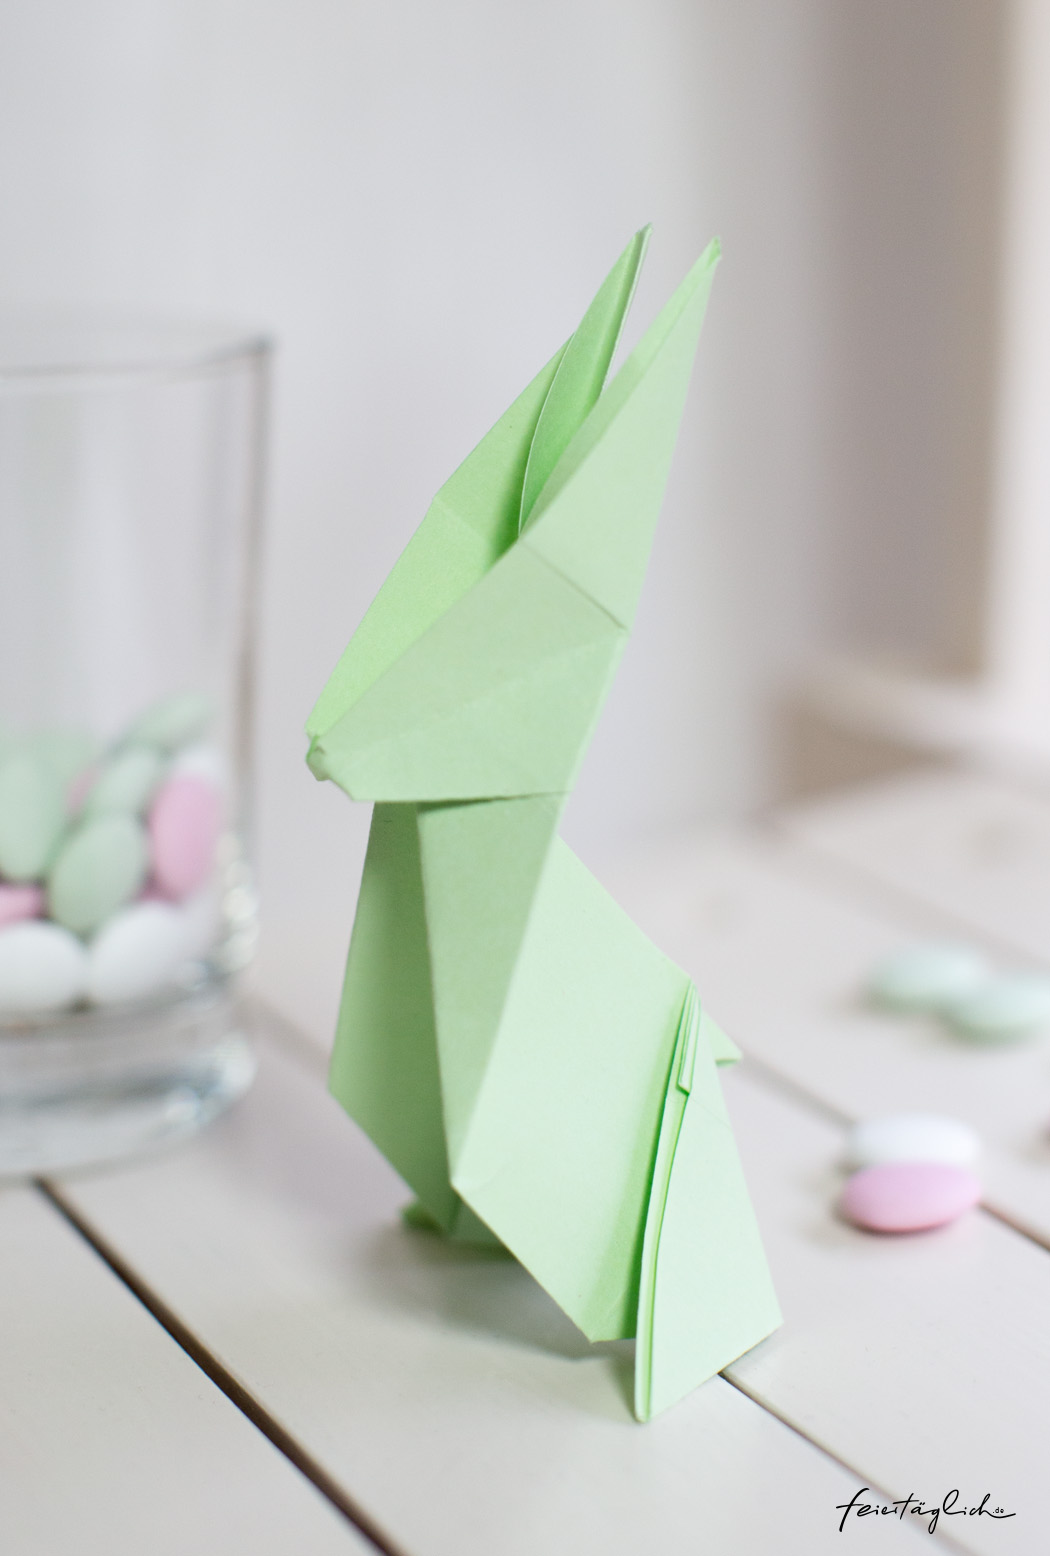 Origami Hase, Faltanleitung, DIY aus Papier